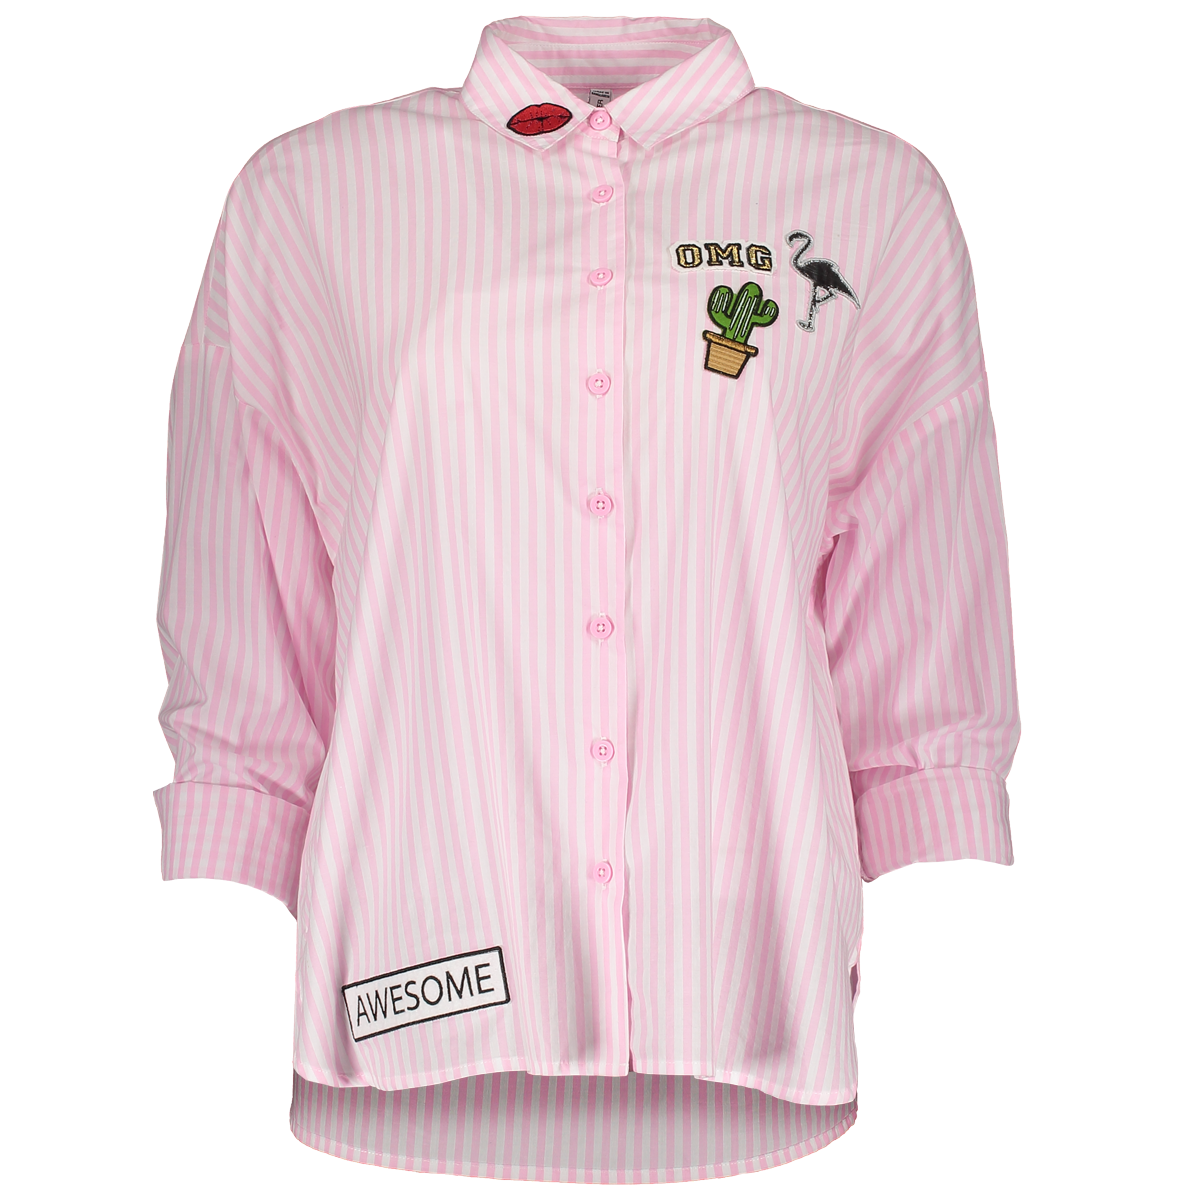 Розовая рубашка в полоску. Девочка в розовой рубашке. Рубашка в полоску с вышивкой. Вышивка на розовой рубашке. Розовая рубашечка на девочку.